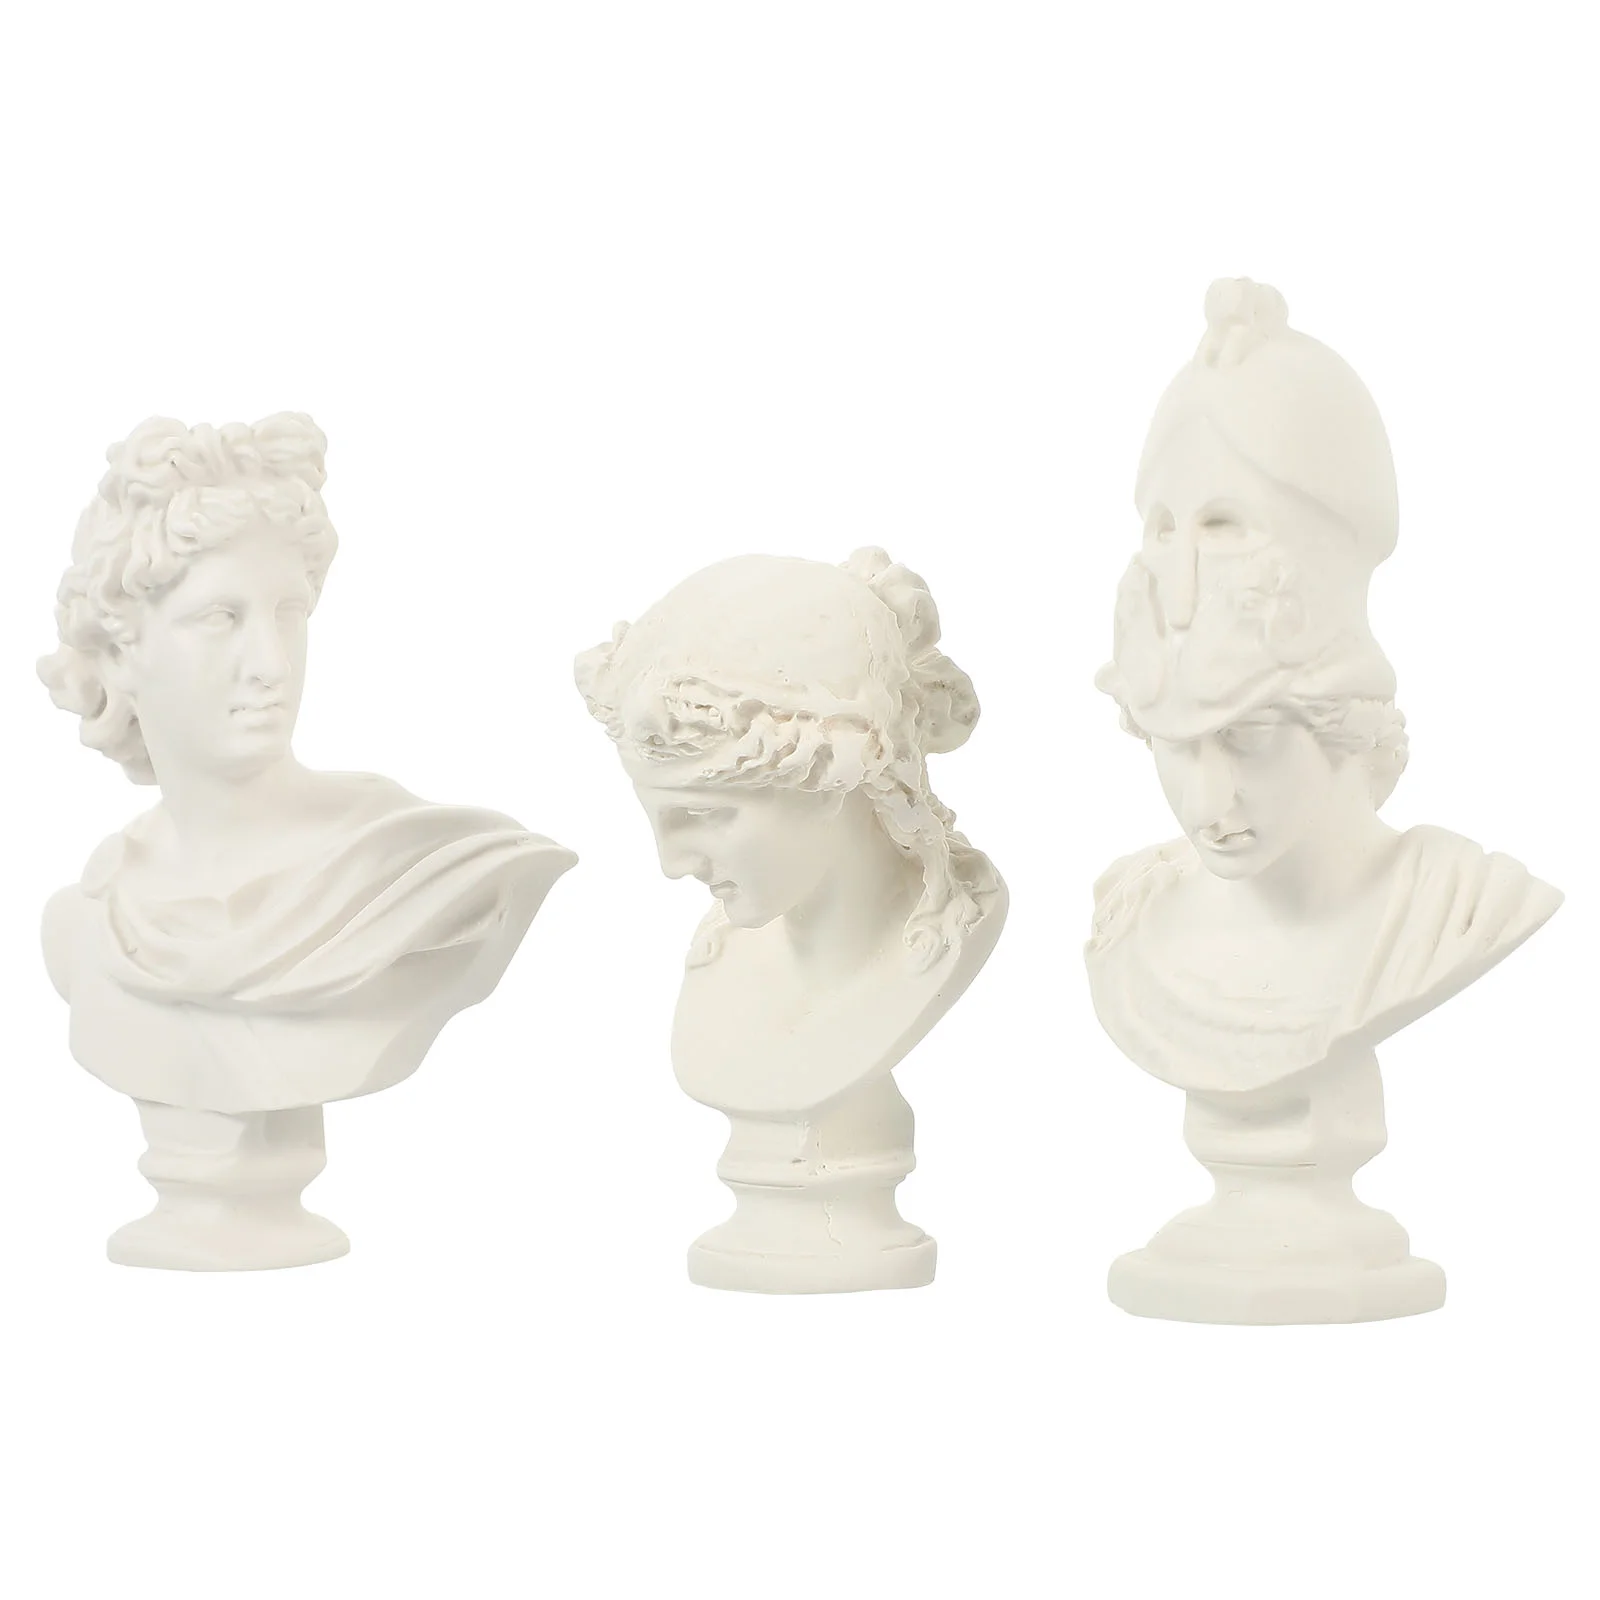 Статуя Афины, 3 предмета, Статуэтки для украшения комнаты, домашние скульптуры и фигурки, фото Орнамент, человеческая голова